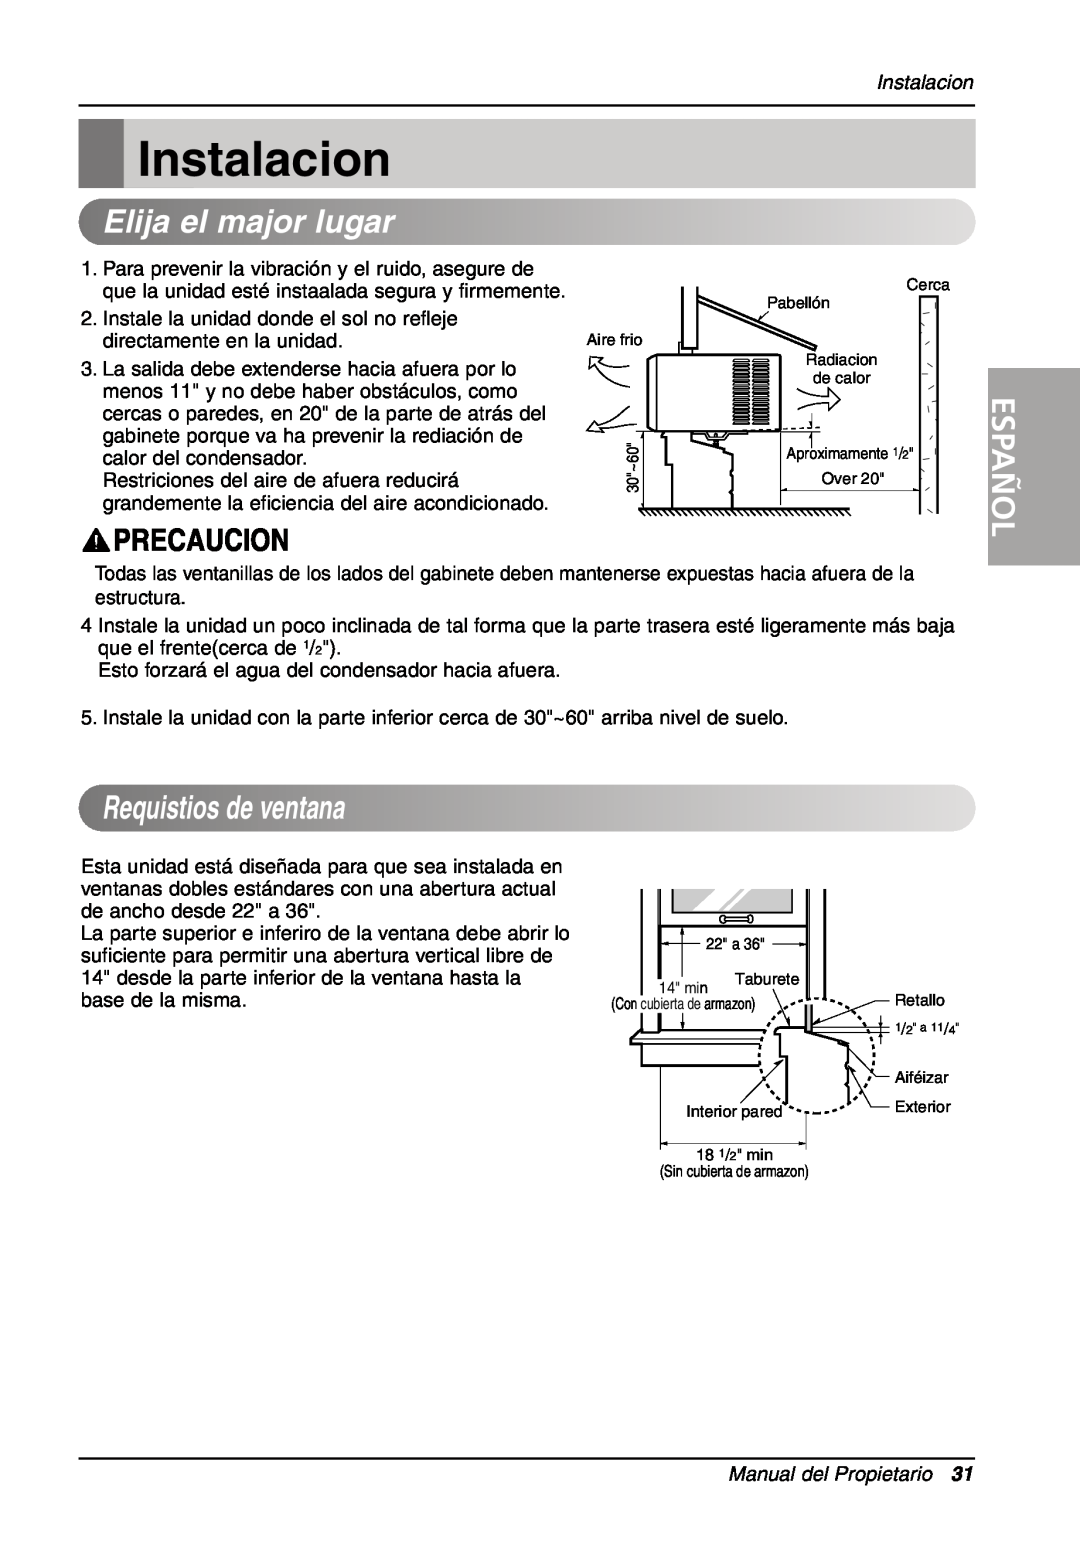 LG Electronics LW701 HR owner manual Instalacion, Elijaelmajorlugar, Requistios de ventana, Español, Manual del Propietario 